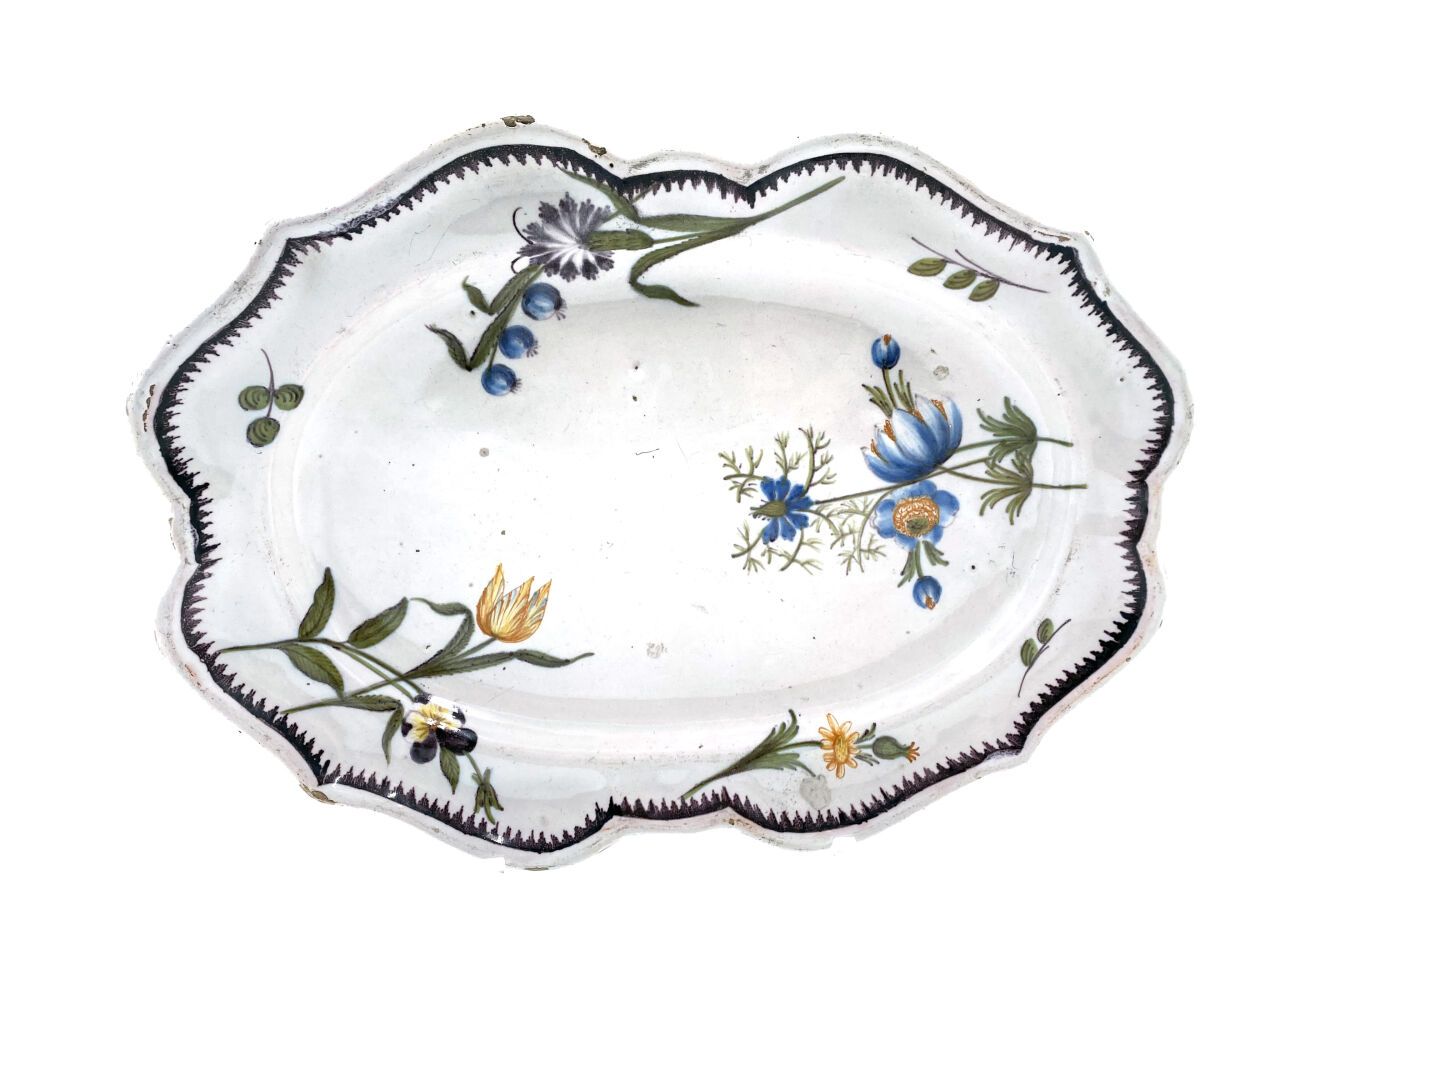 Null 马赛
边缘有轮廓的陶制小椭圆盘，有多色的花朵装饰，边缘有梳状的锰。
弗奇尔的制造。
18世纪。 
L. 27 cm.
刮伤。